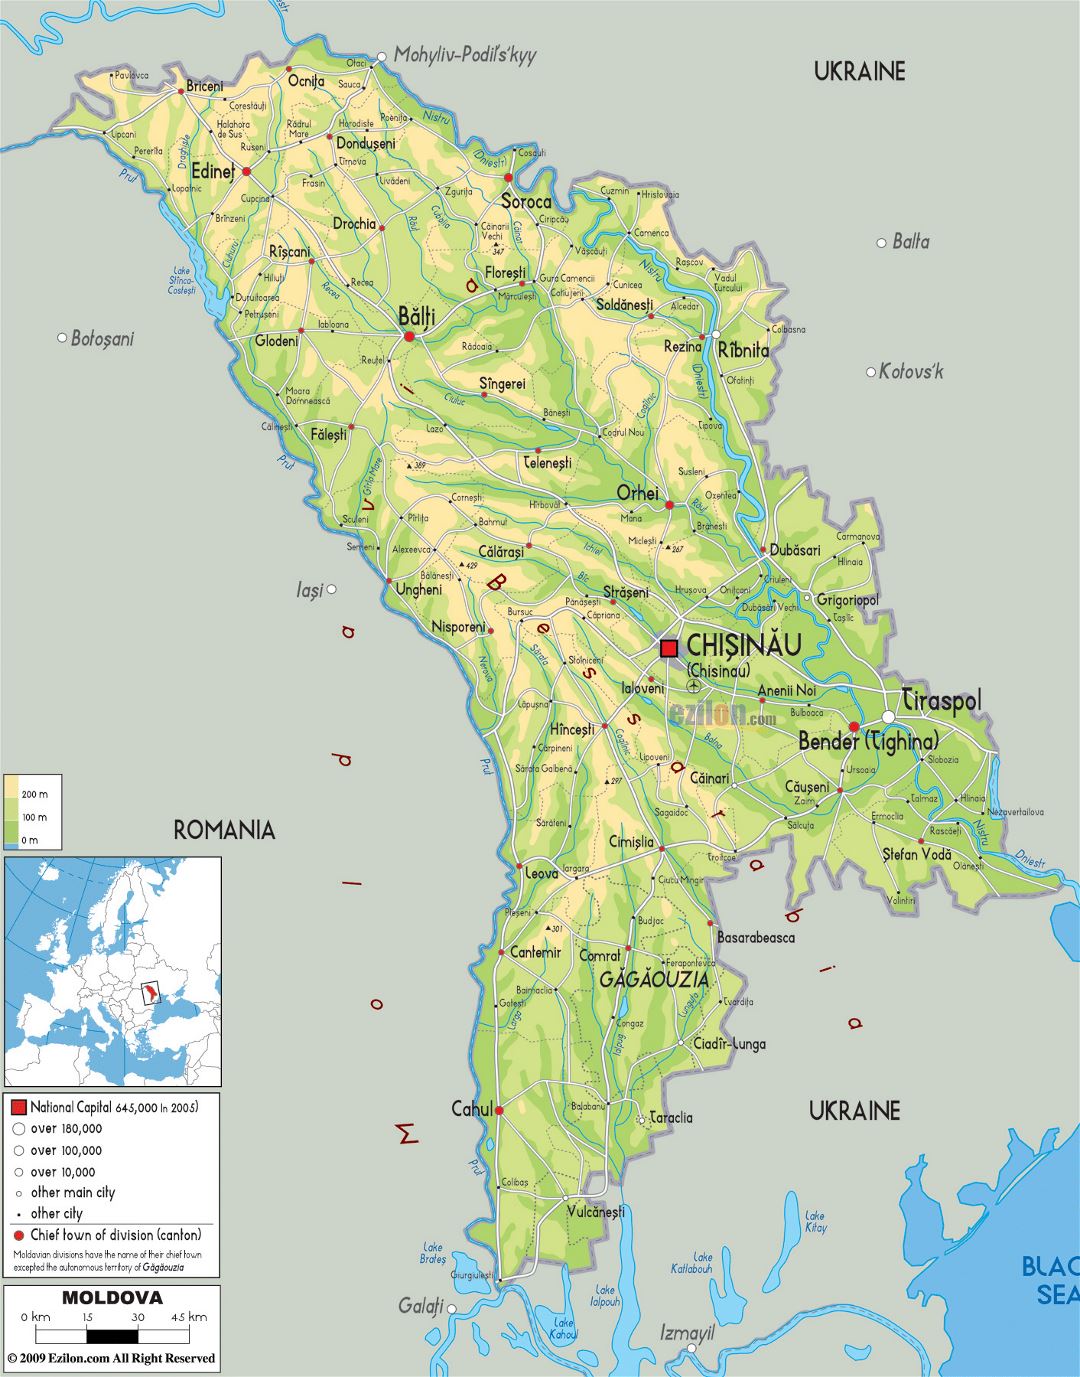 Grande mapa físico de Moldavia con carreteras, ciudades y aeropuertos